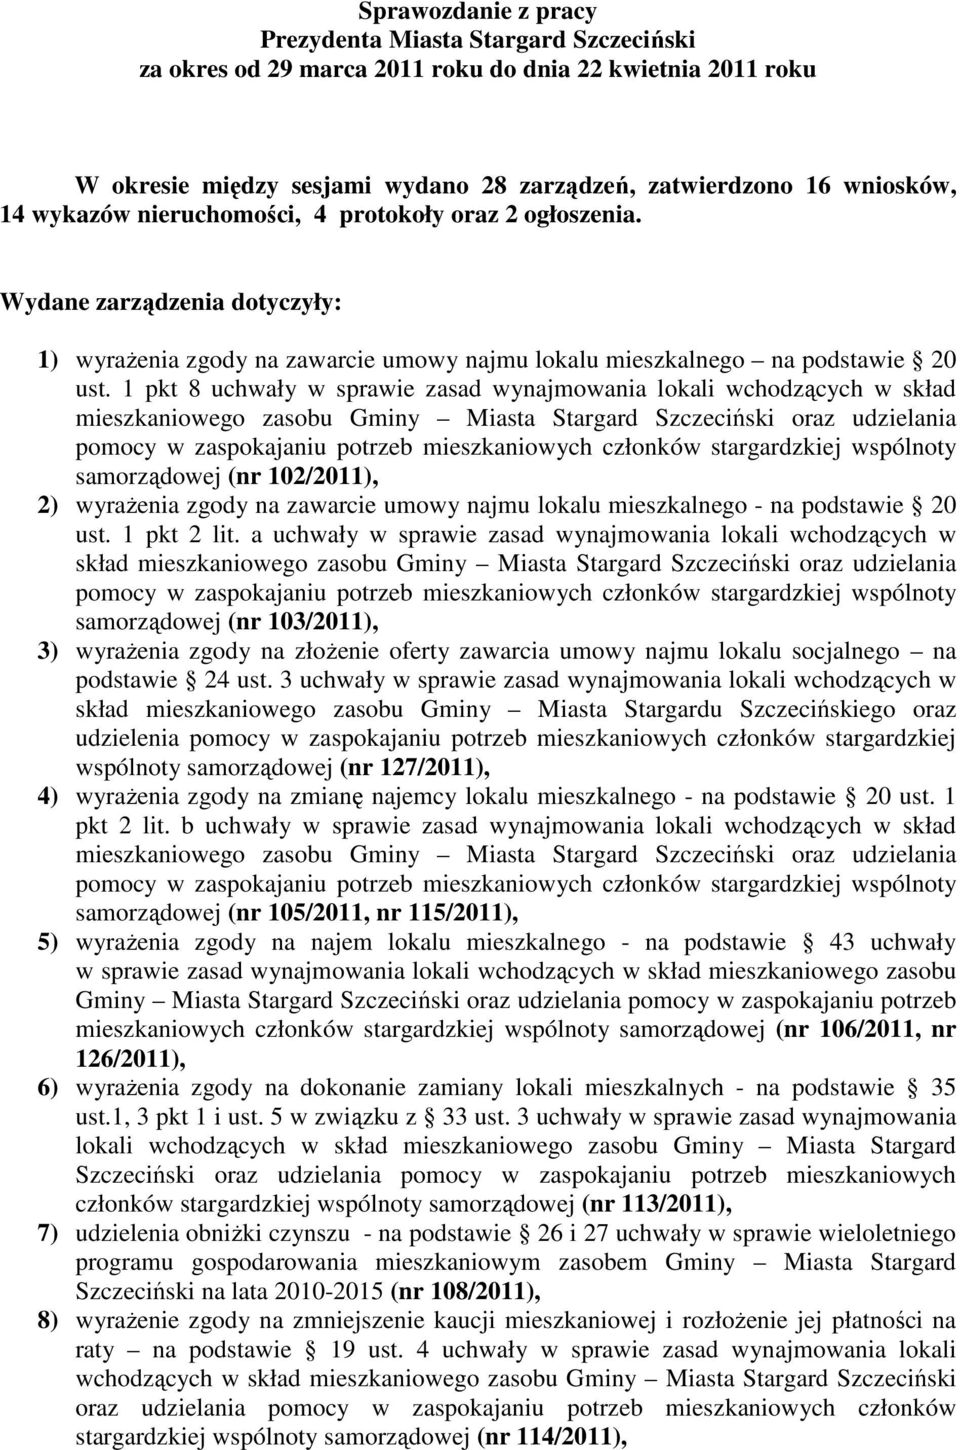 1 pkt 8 uchwały w sprawie zasad wynajmowania lokali wchodzących w skład mieszkaniowego zasobu Gminy Miasta Stargard Szczeciński oraz udzielania pomocy w zaspokajaniu potrzeb mieszkaniowych członków